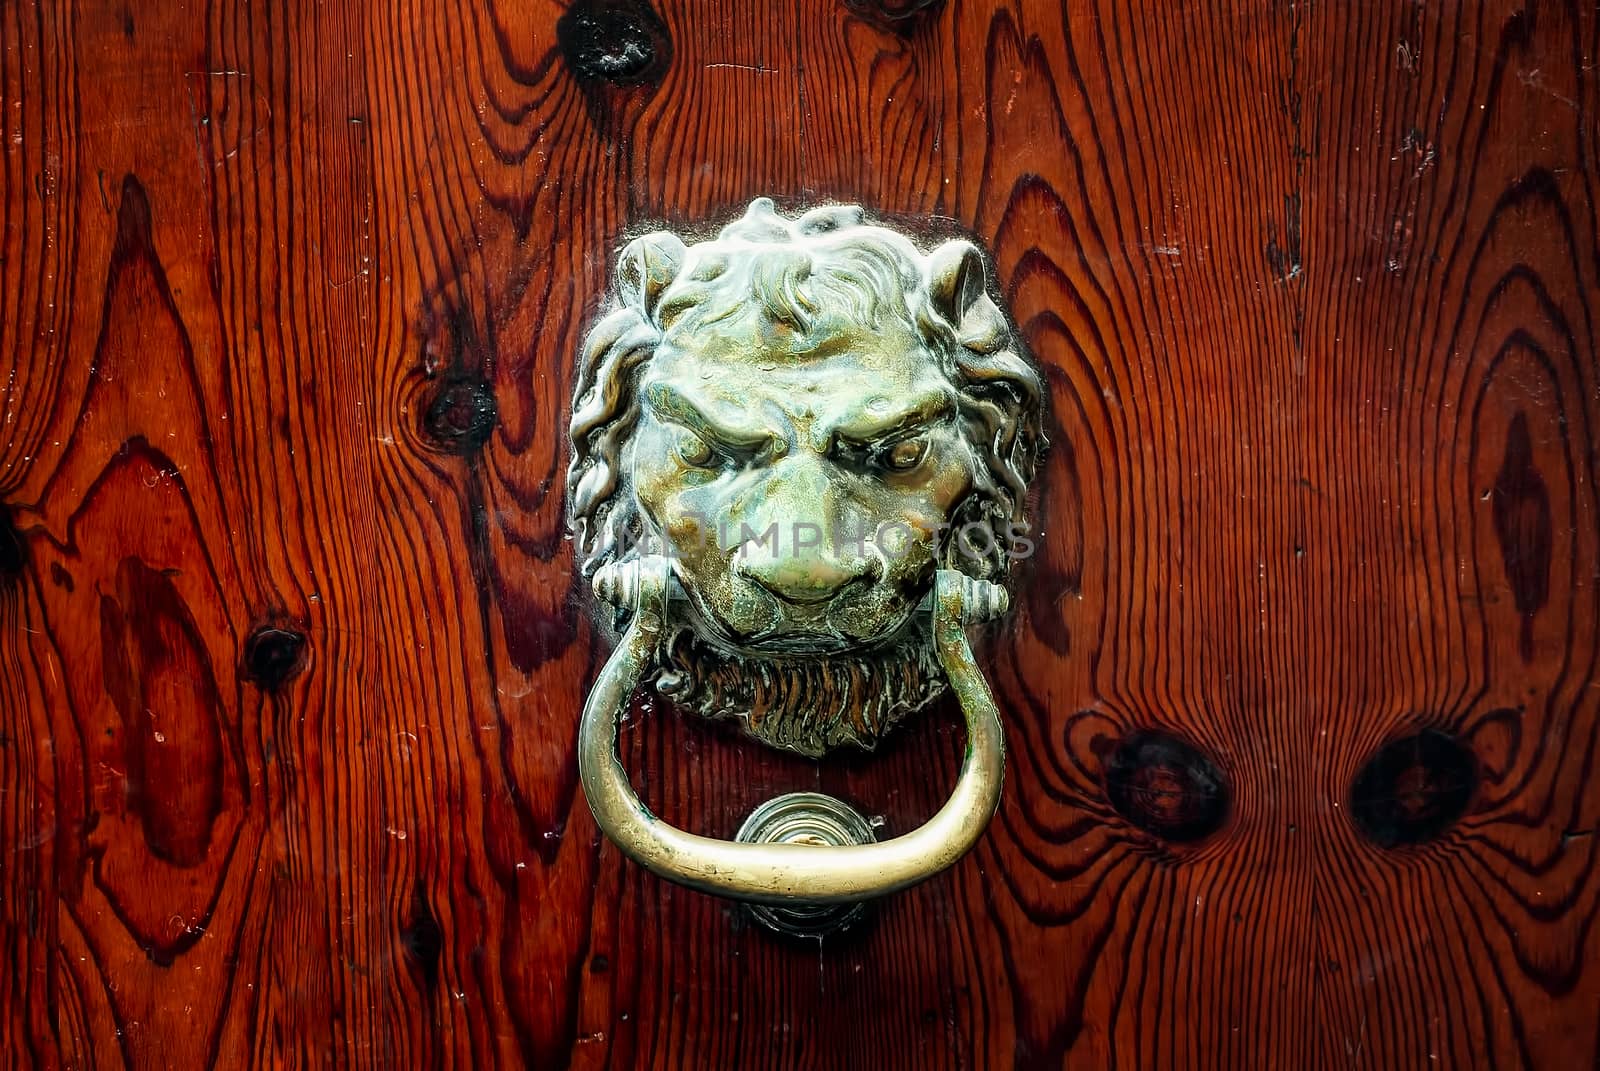 Decorative bronze lion head door knob on a dark wooden background